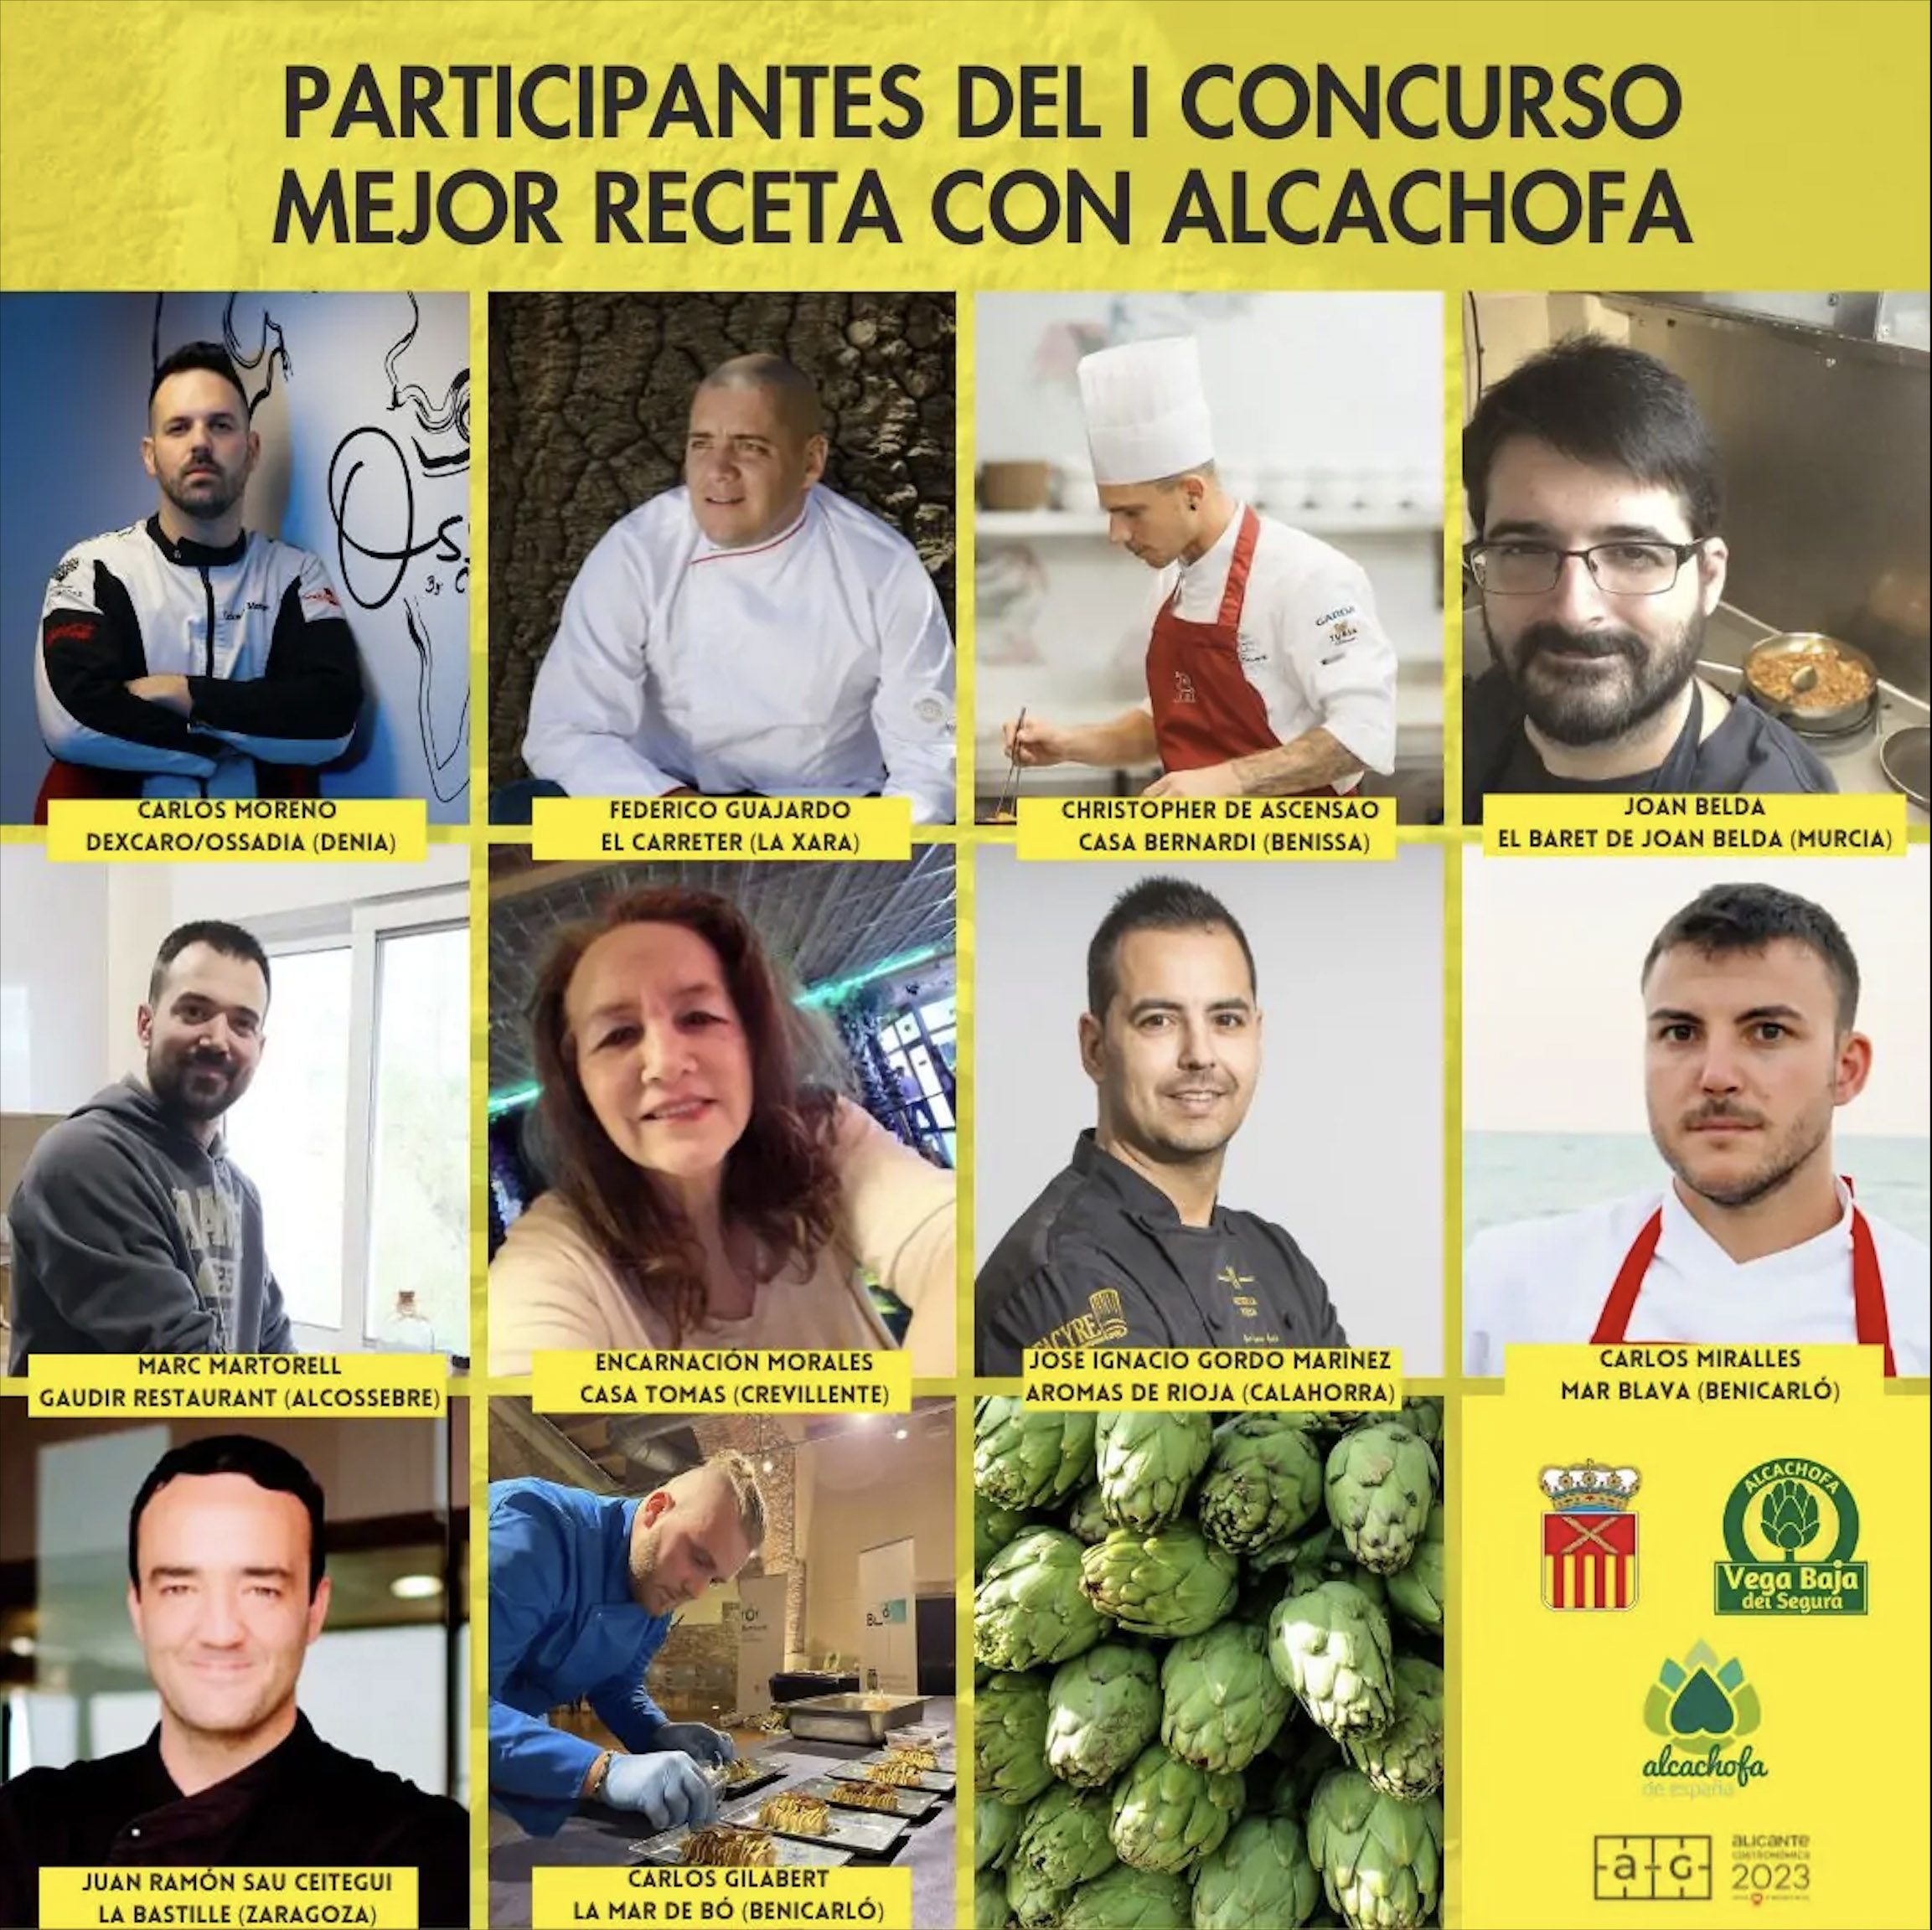 Una decena de cocineros lucharán por conseguir el premio al mejor plato con alcachofas de la Vega Baja en Alicante Gastronómica